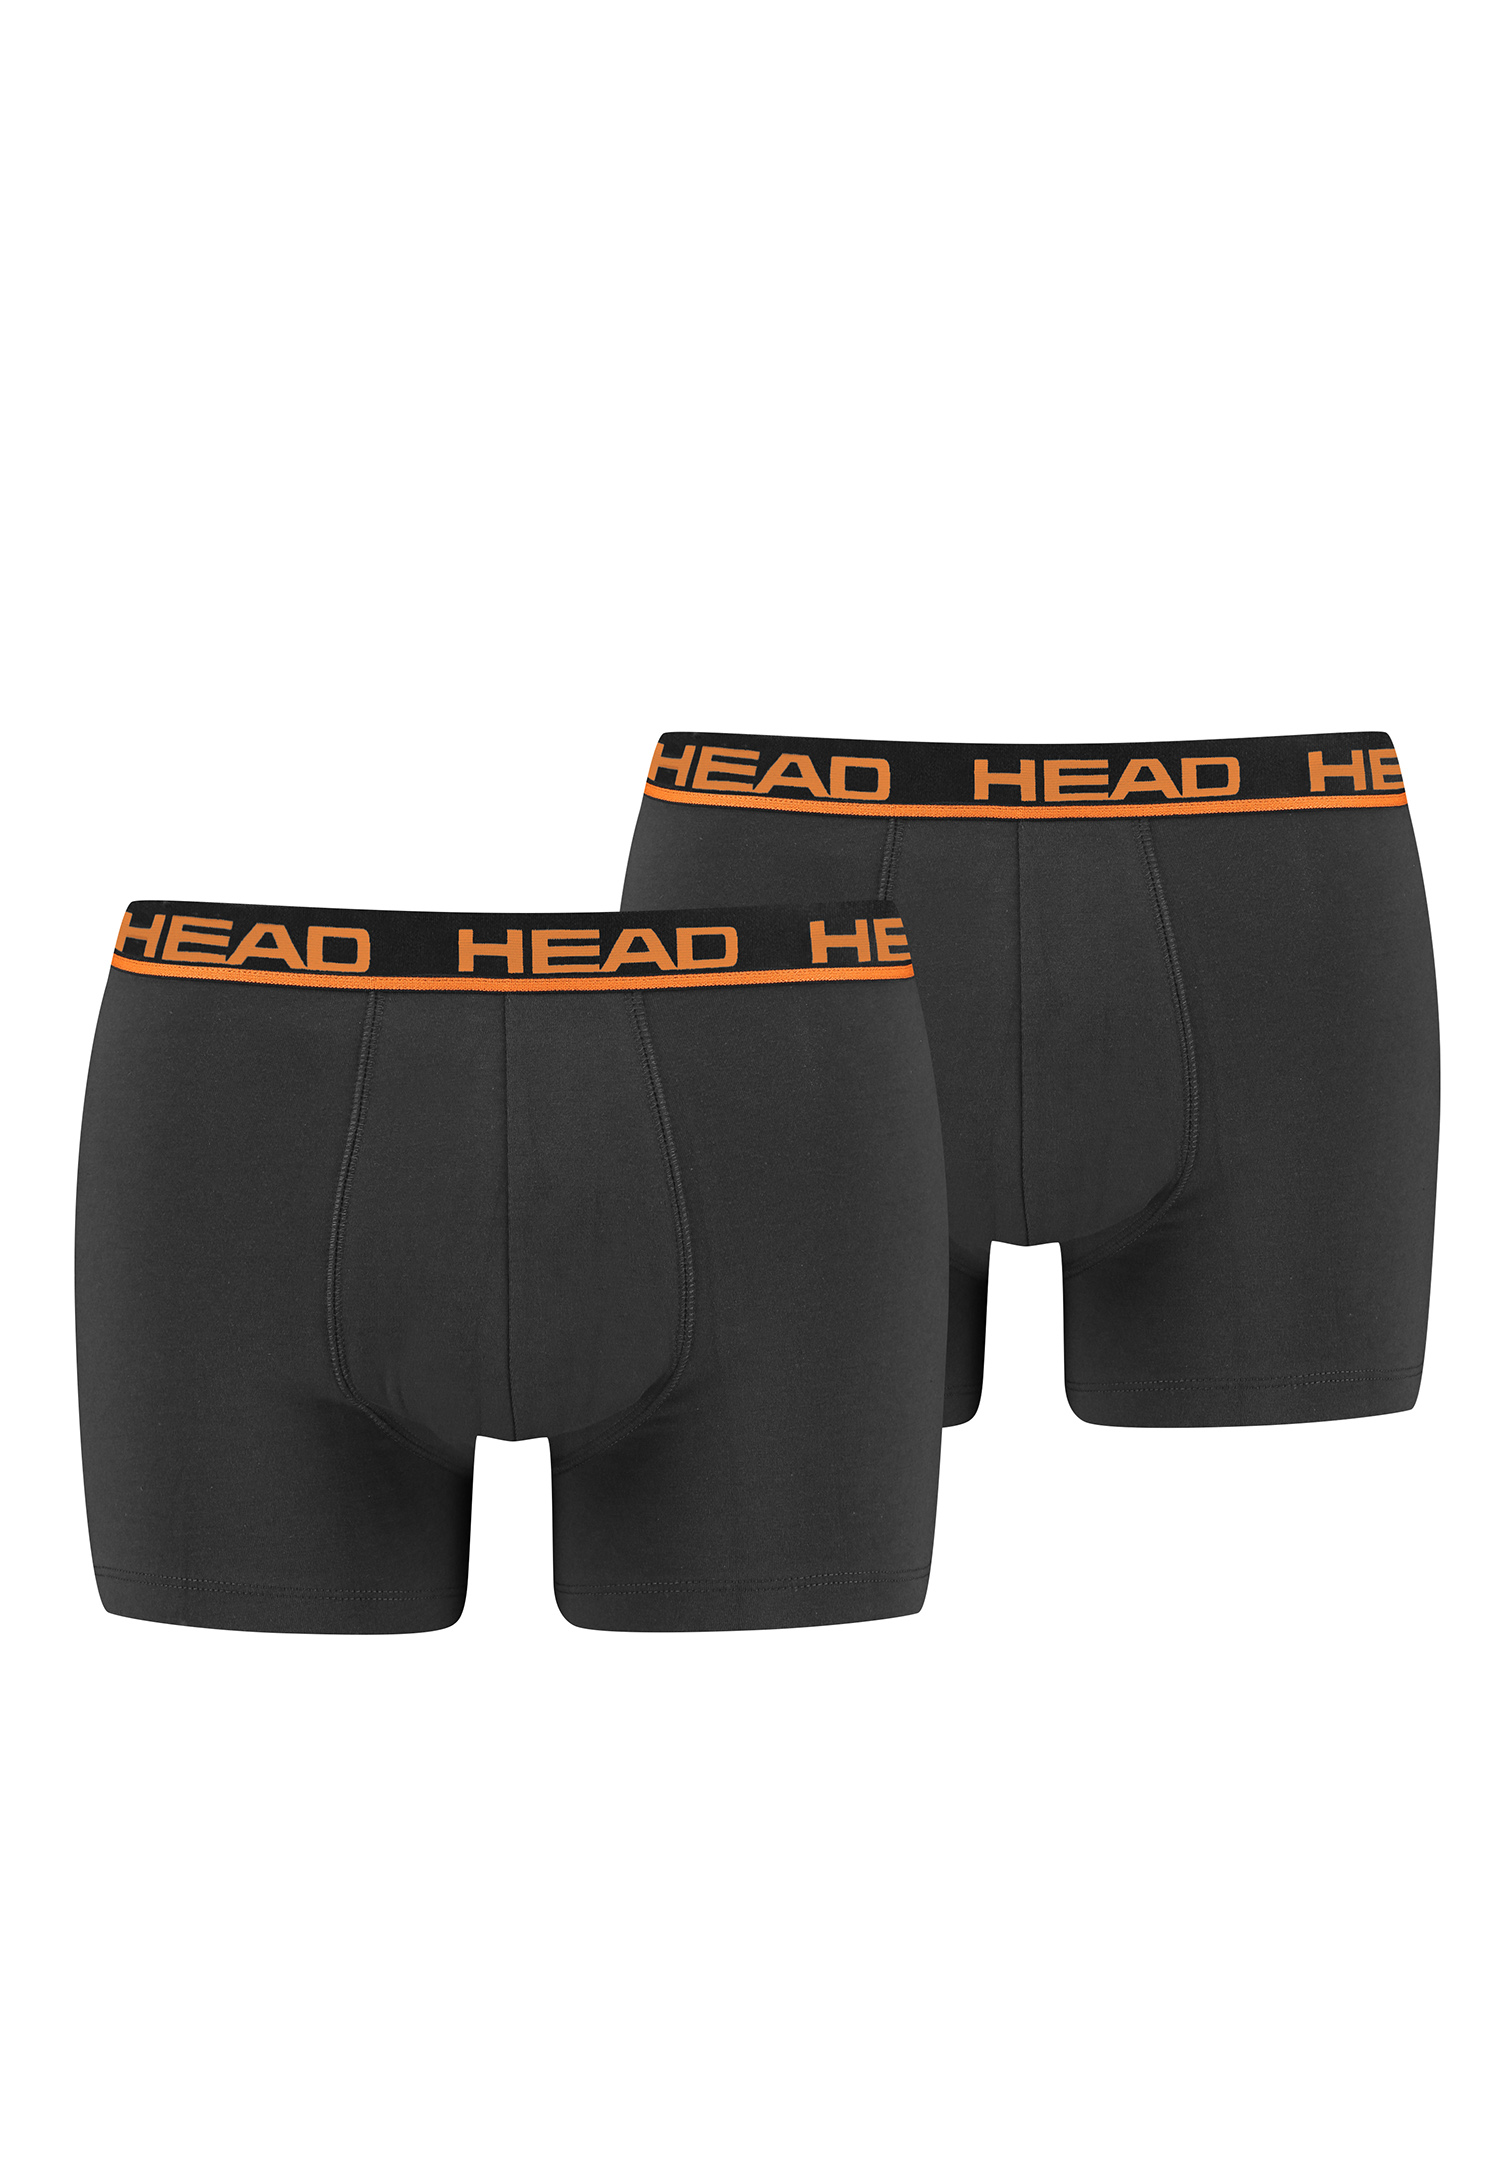 Head Herren Basic Boxer Pant Shorts Unterwäsche Unterhose 2 er Pack von HEAD